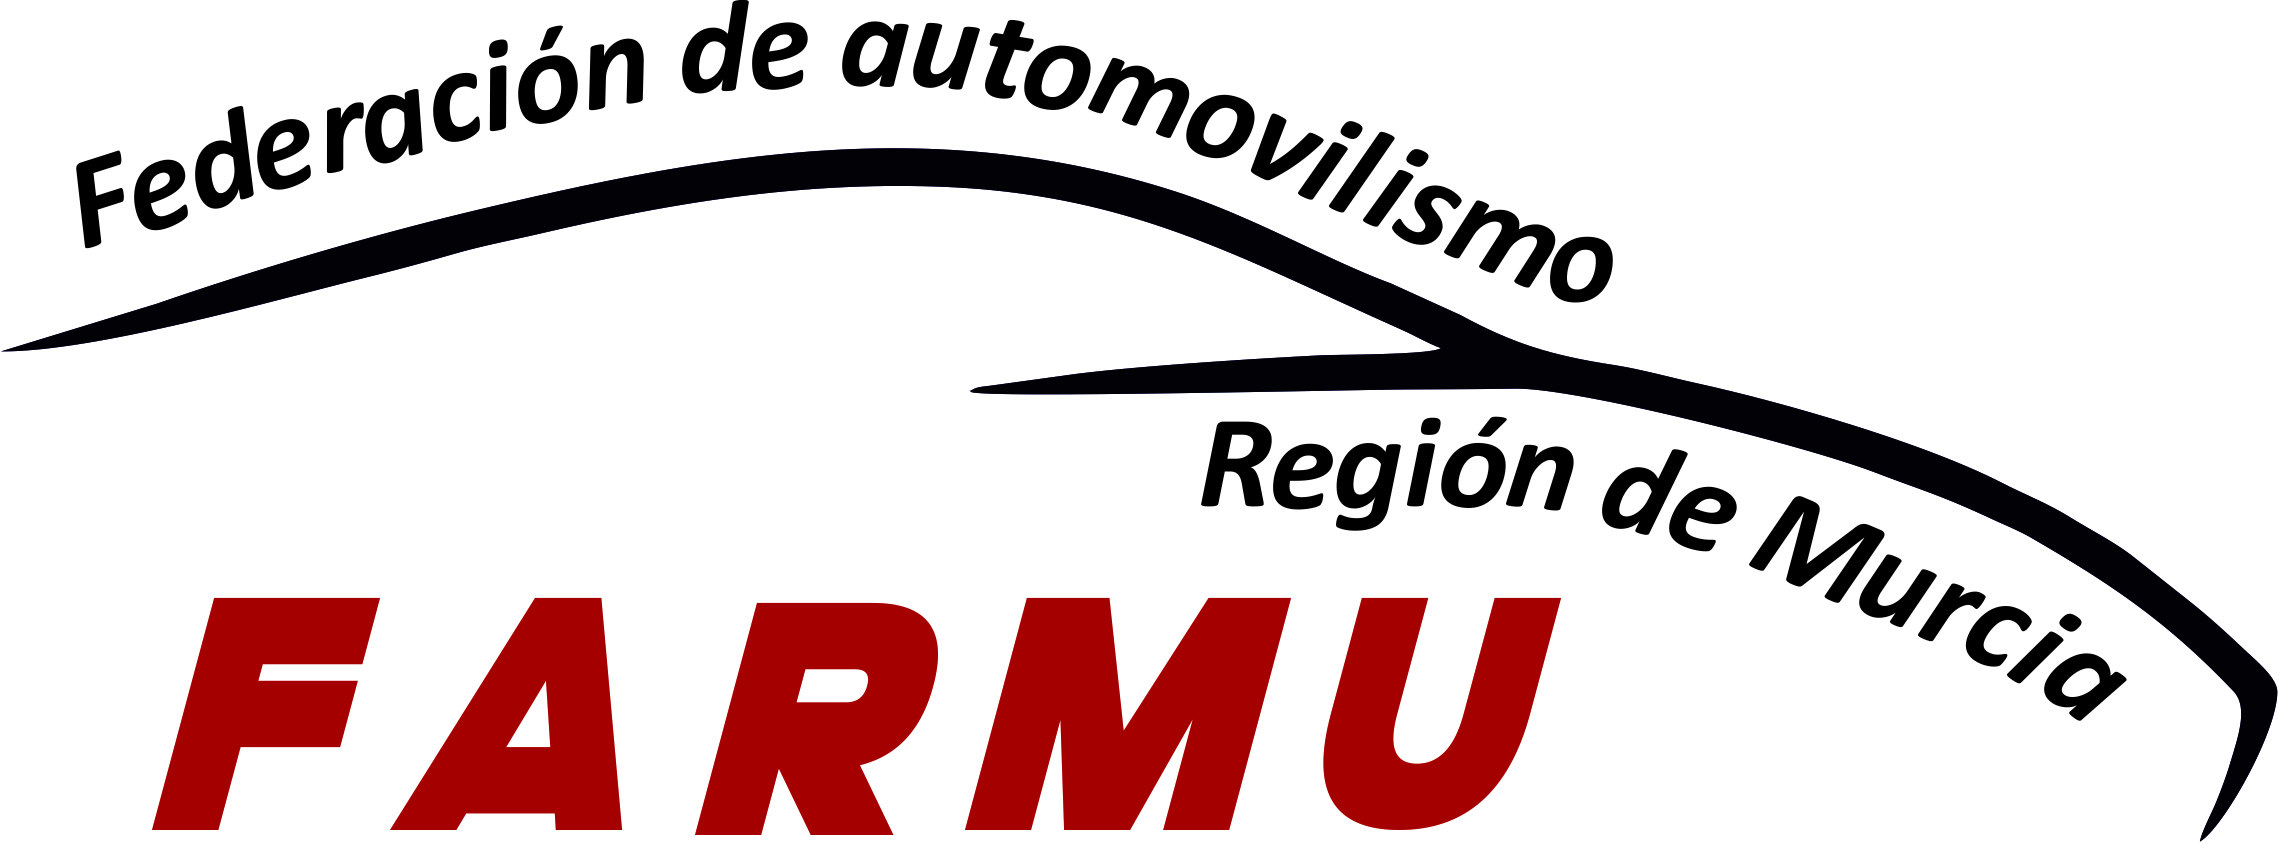 Federación de automovilismo de la Región de Murcia